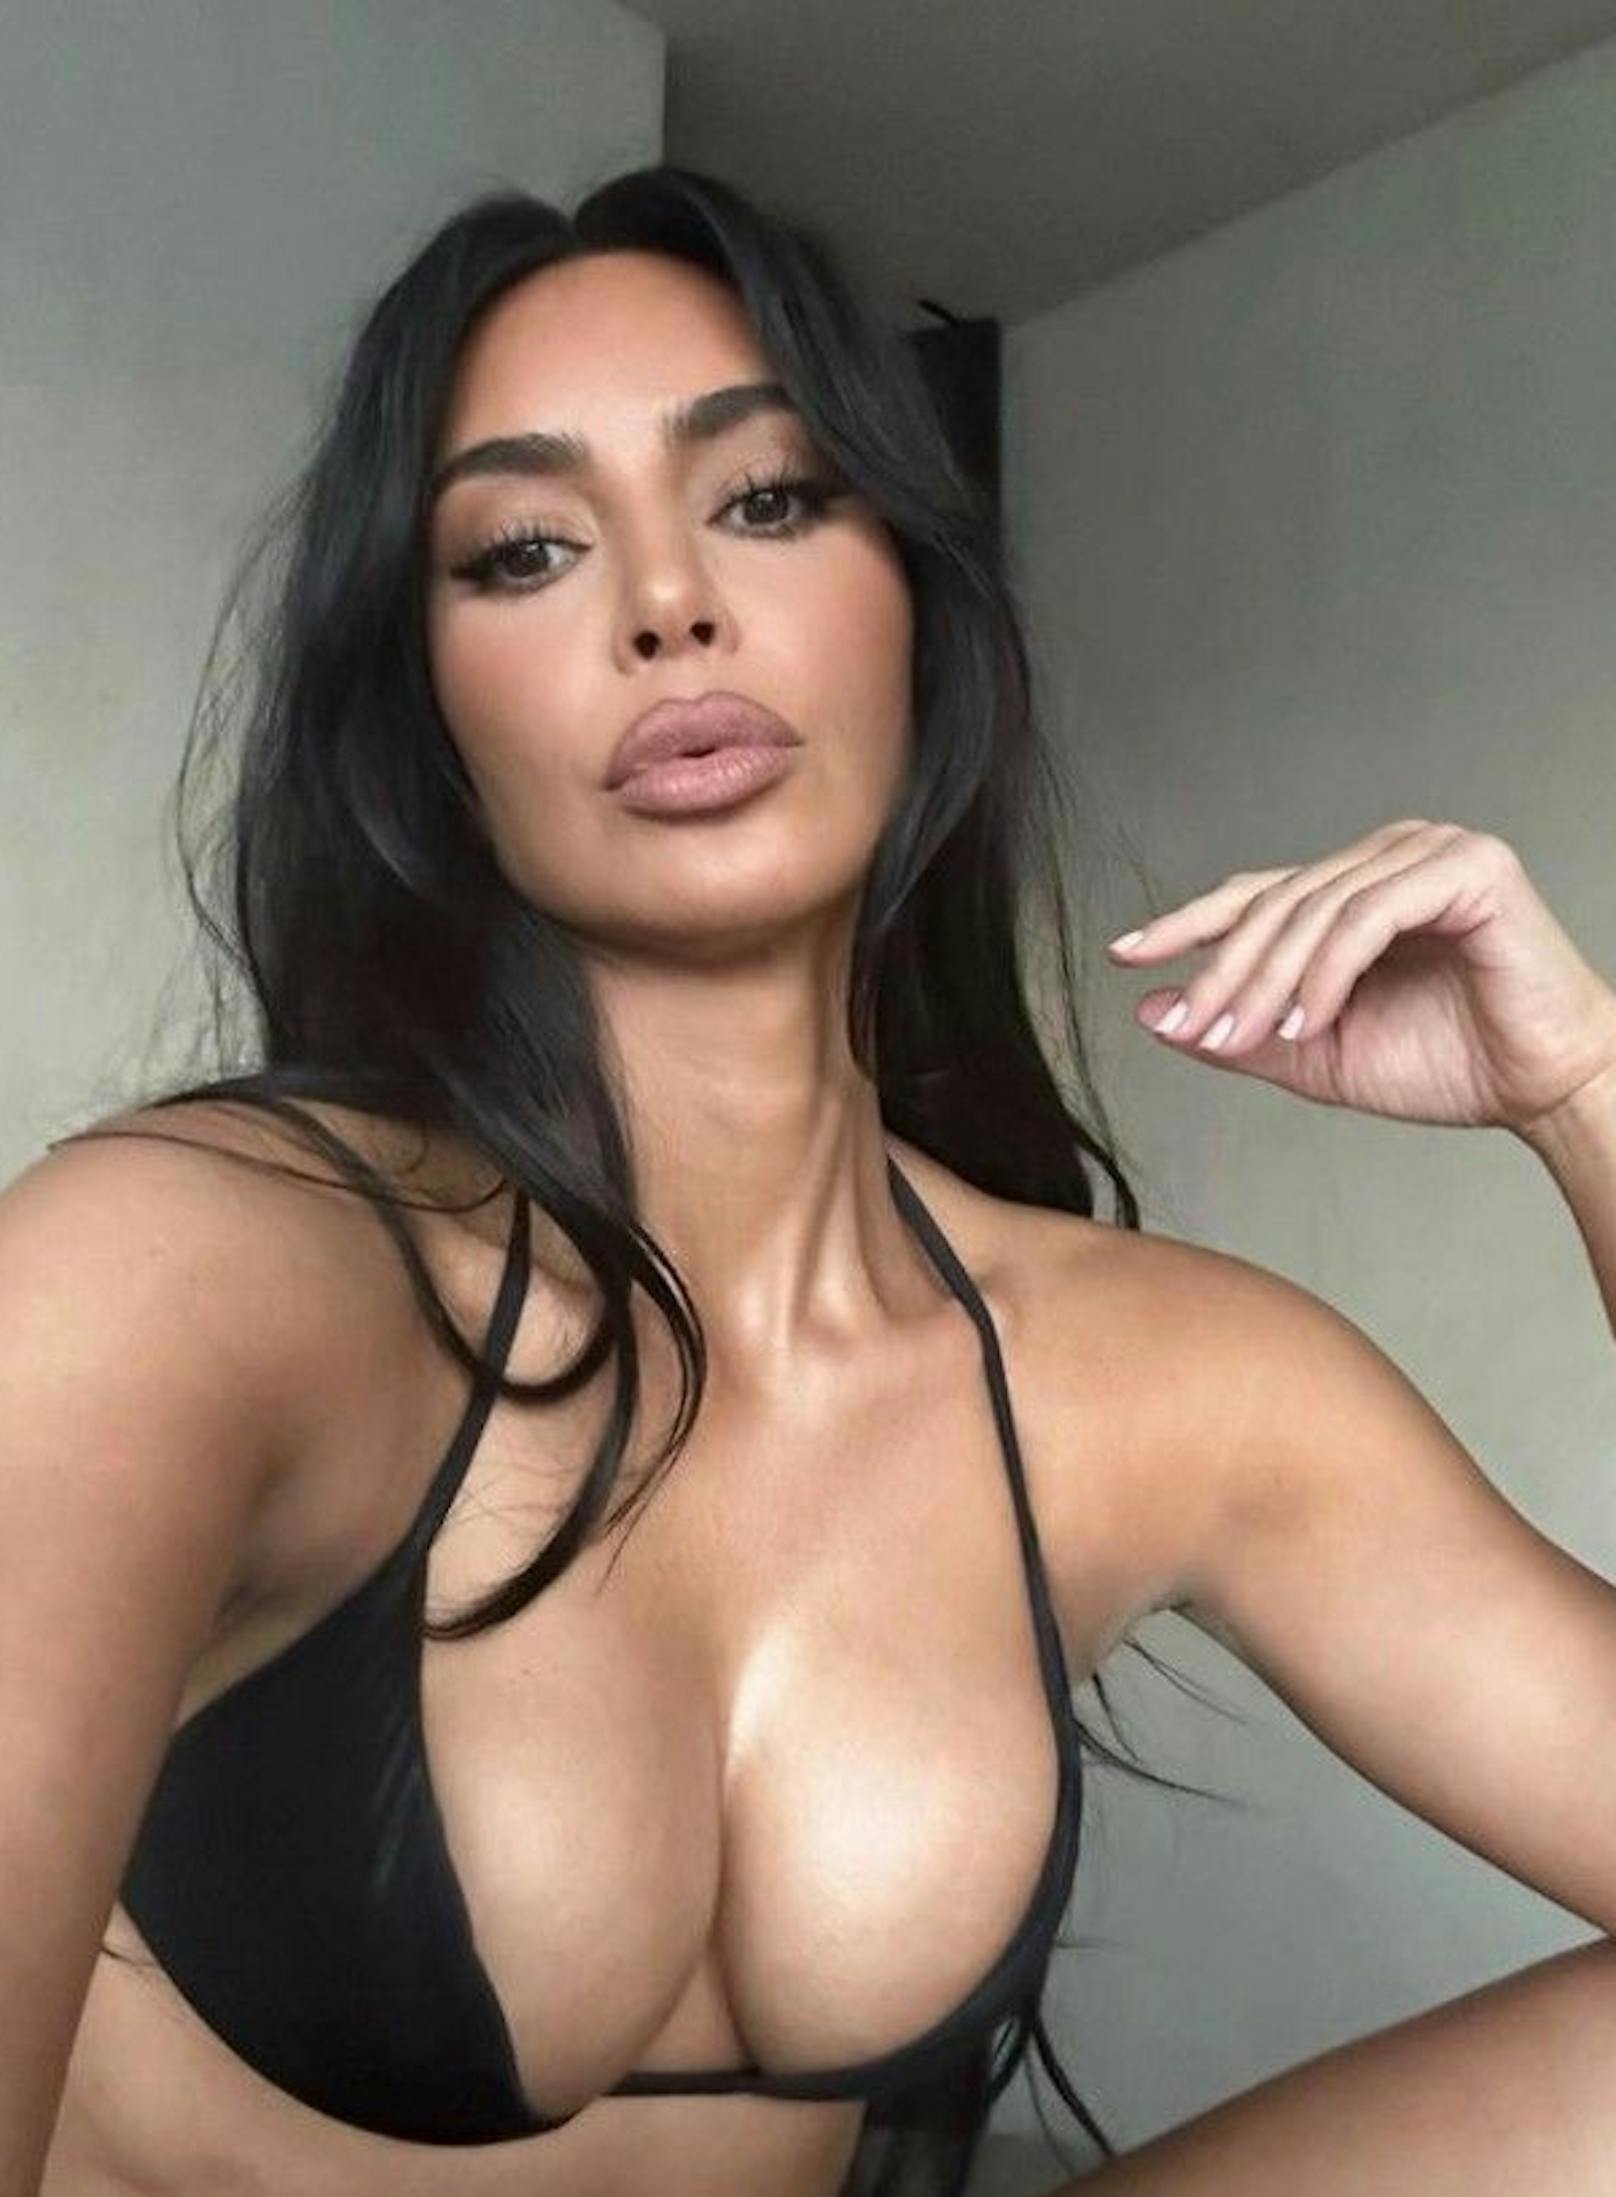 Gewohnt freizügig zeigt sich auch Kim Kardashian in ihrem sommerlichen Look auf Social Media.